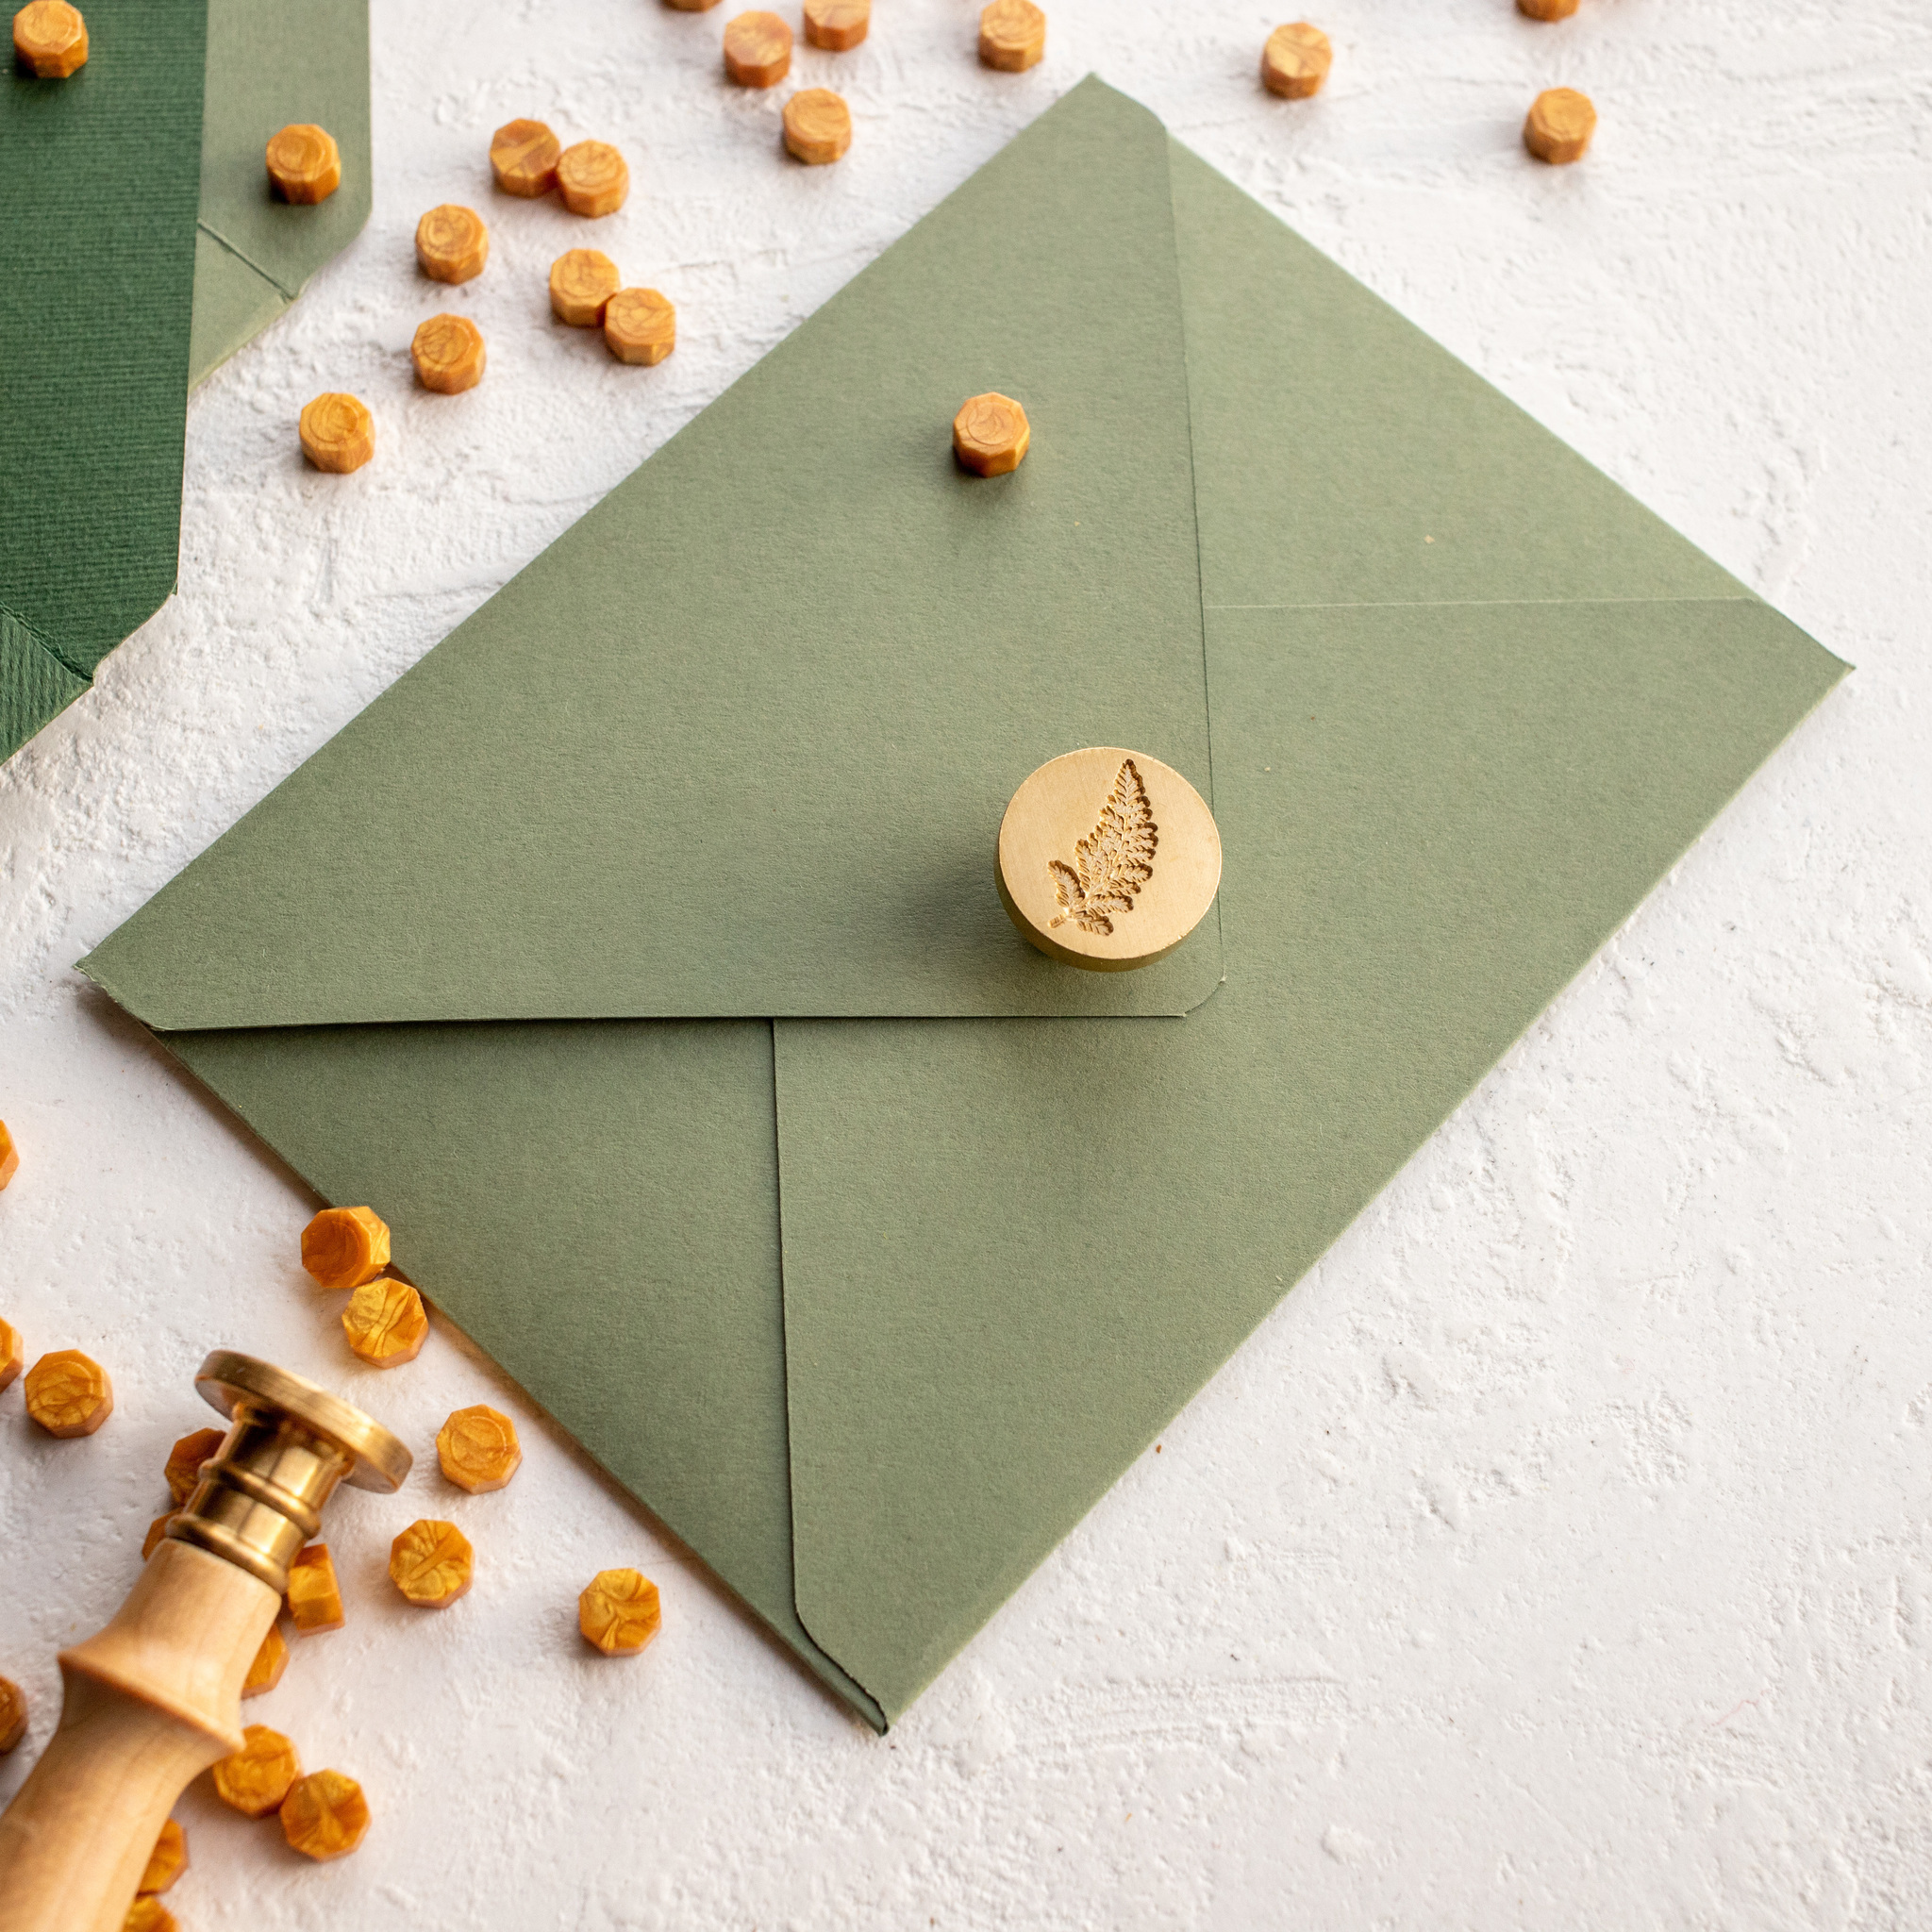 Как сделать конверт из бумаги, пошаговая инструкция